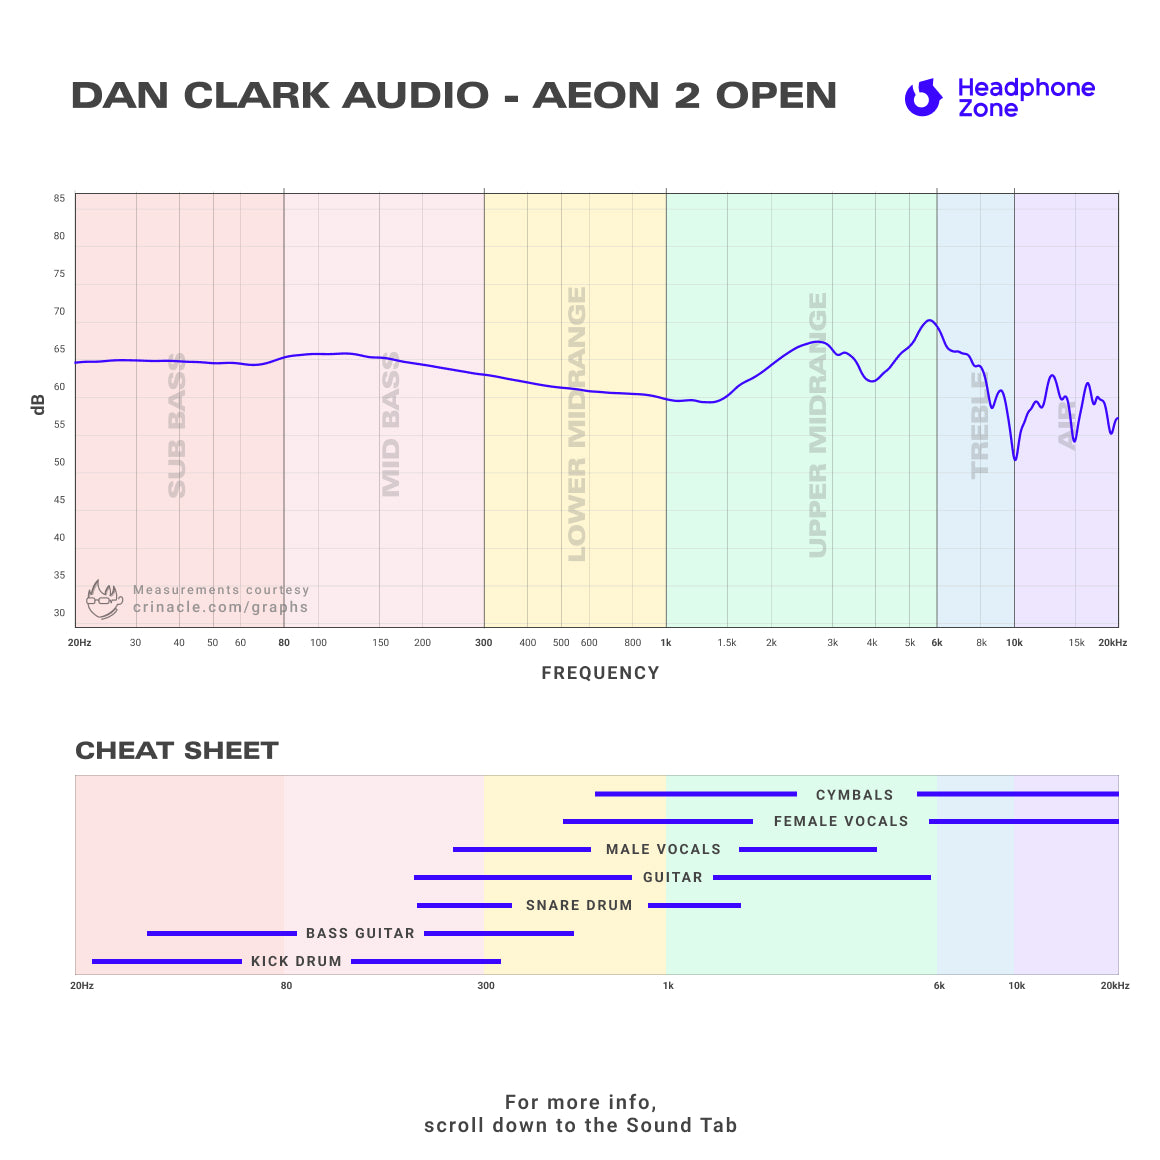 Dan Clark Audio - AEON 2 Open